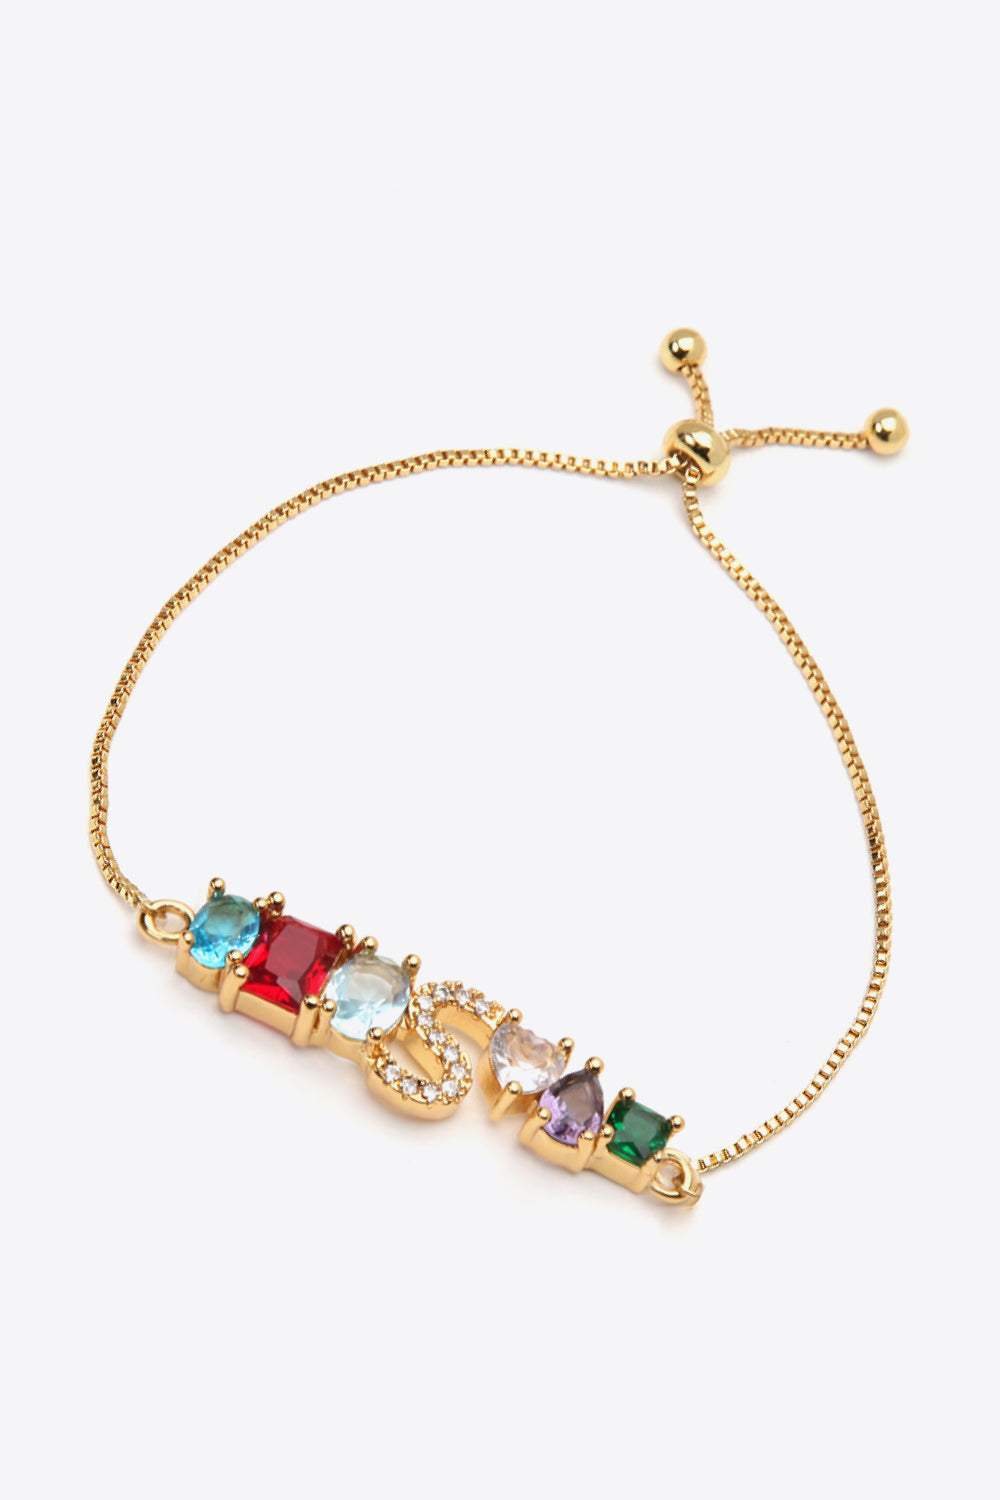 K to T Zircon Bracelet - Women’s Jewelry - Bracelets - 26 - 2024